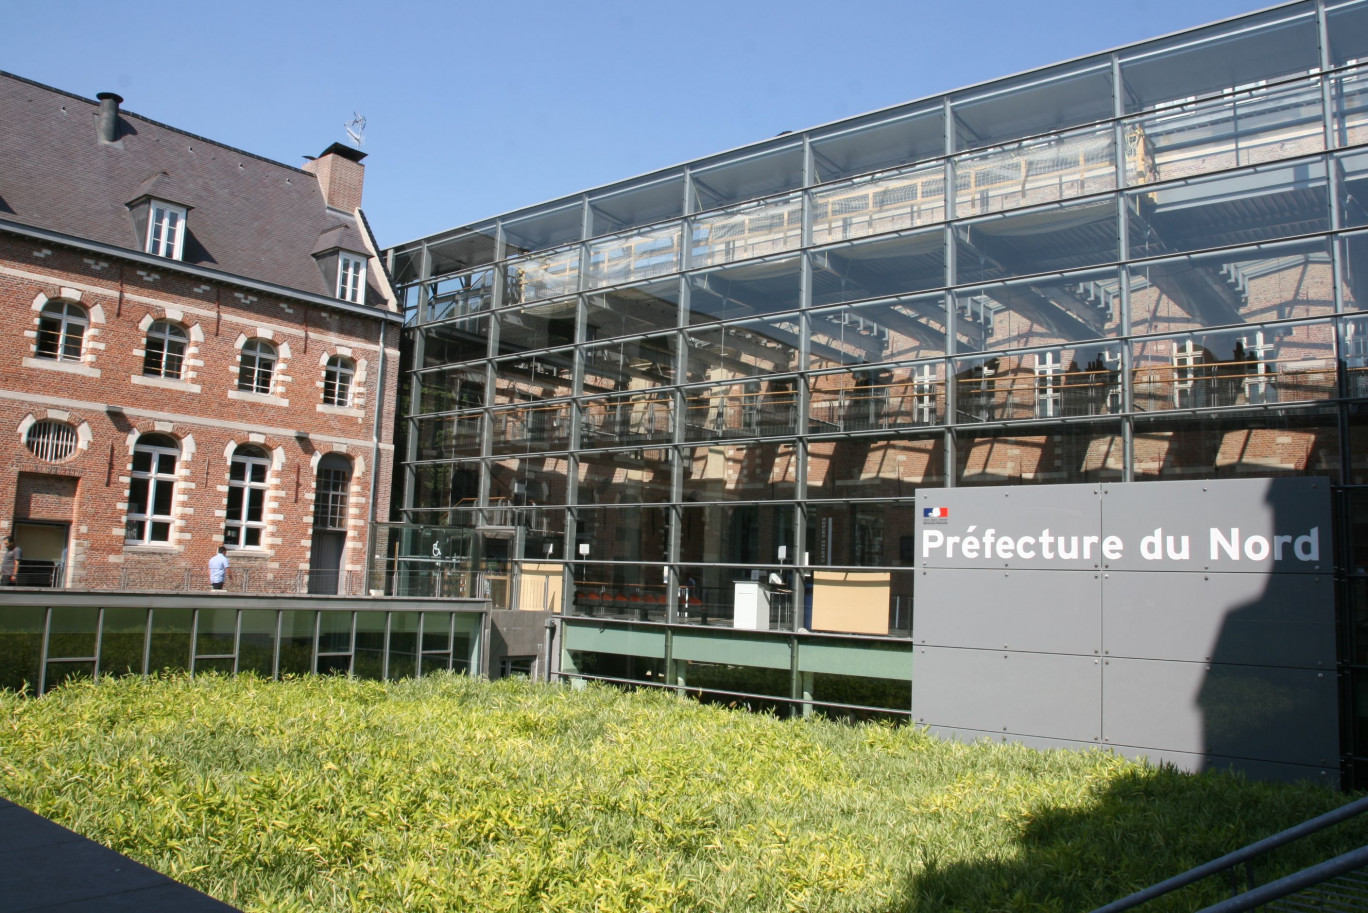 Les locaux de la préfecture du Nord à Lille voient passer 1 800 personnes par jour.